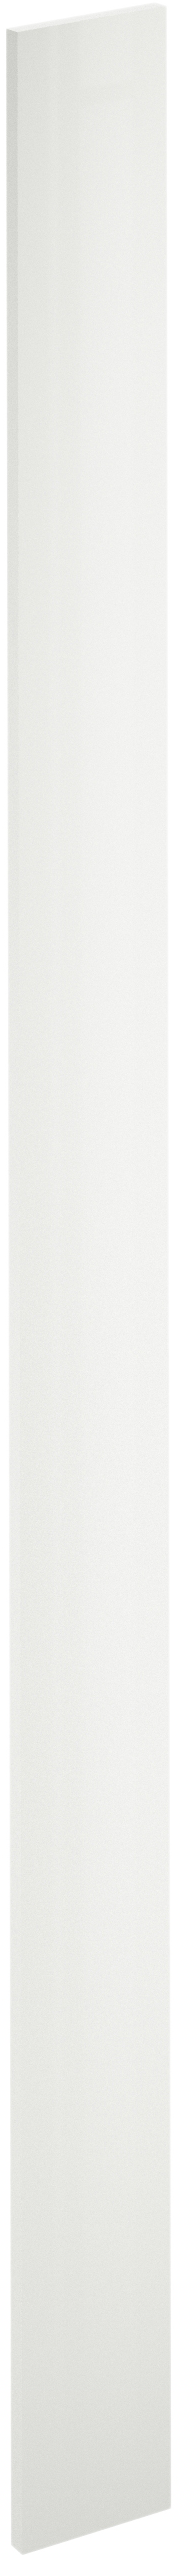 Puerta para mueble de cocina sevilla blanco brillo h 214.4 x l 15 cm